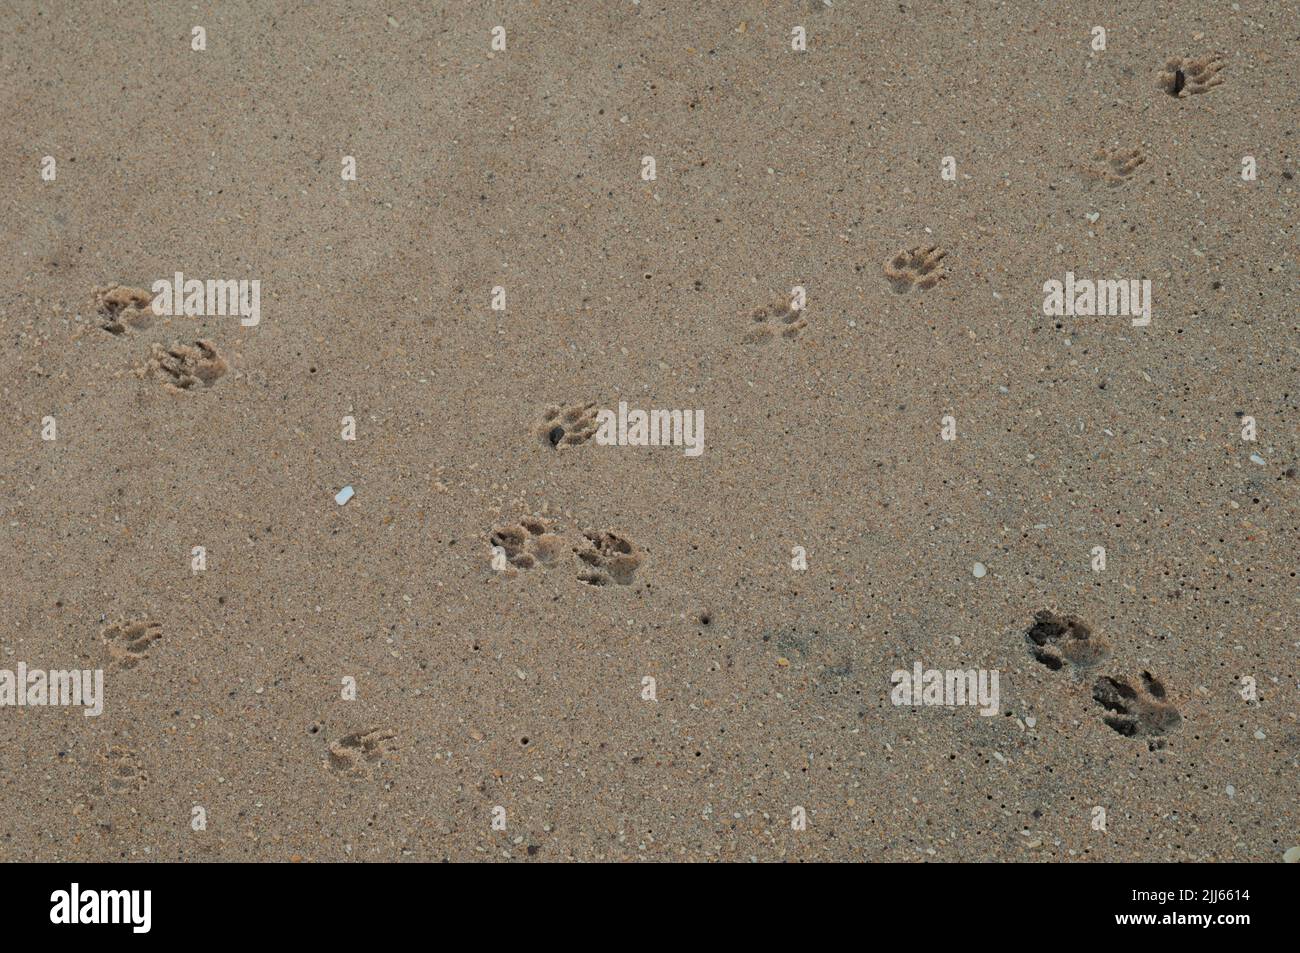 Tracce di canid sulla sabbia. Riserva naturale di Popenguine. Thi. Senegal. Foto Stock